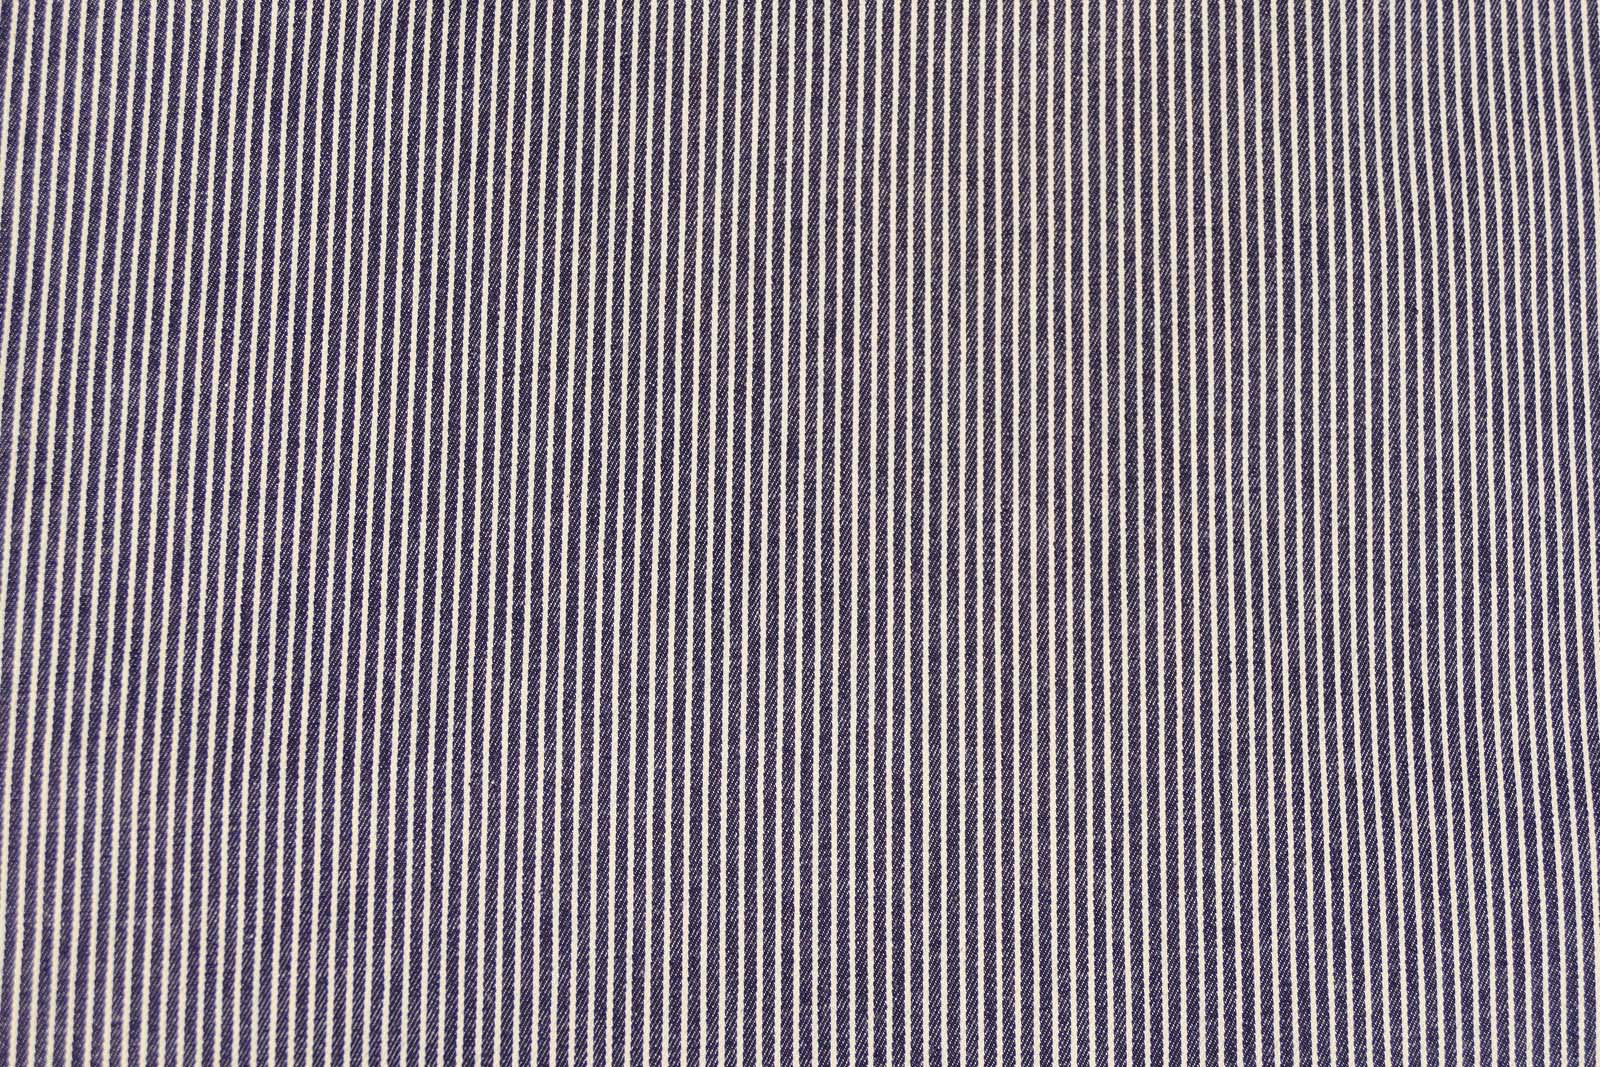 Jeansstretch Streifen dunkelblau weiß 518